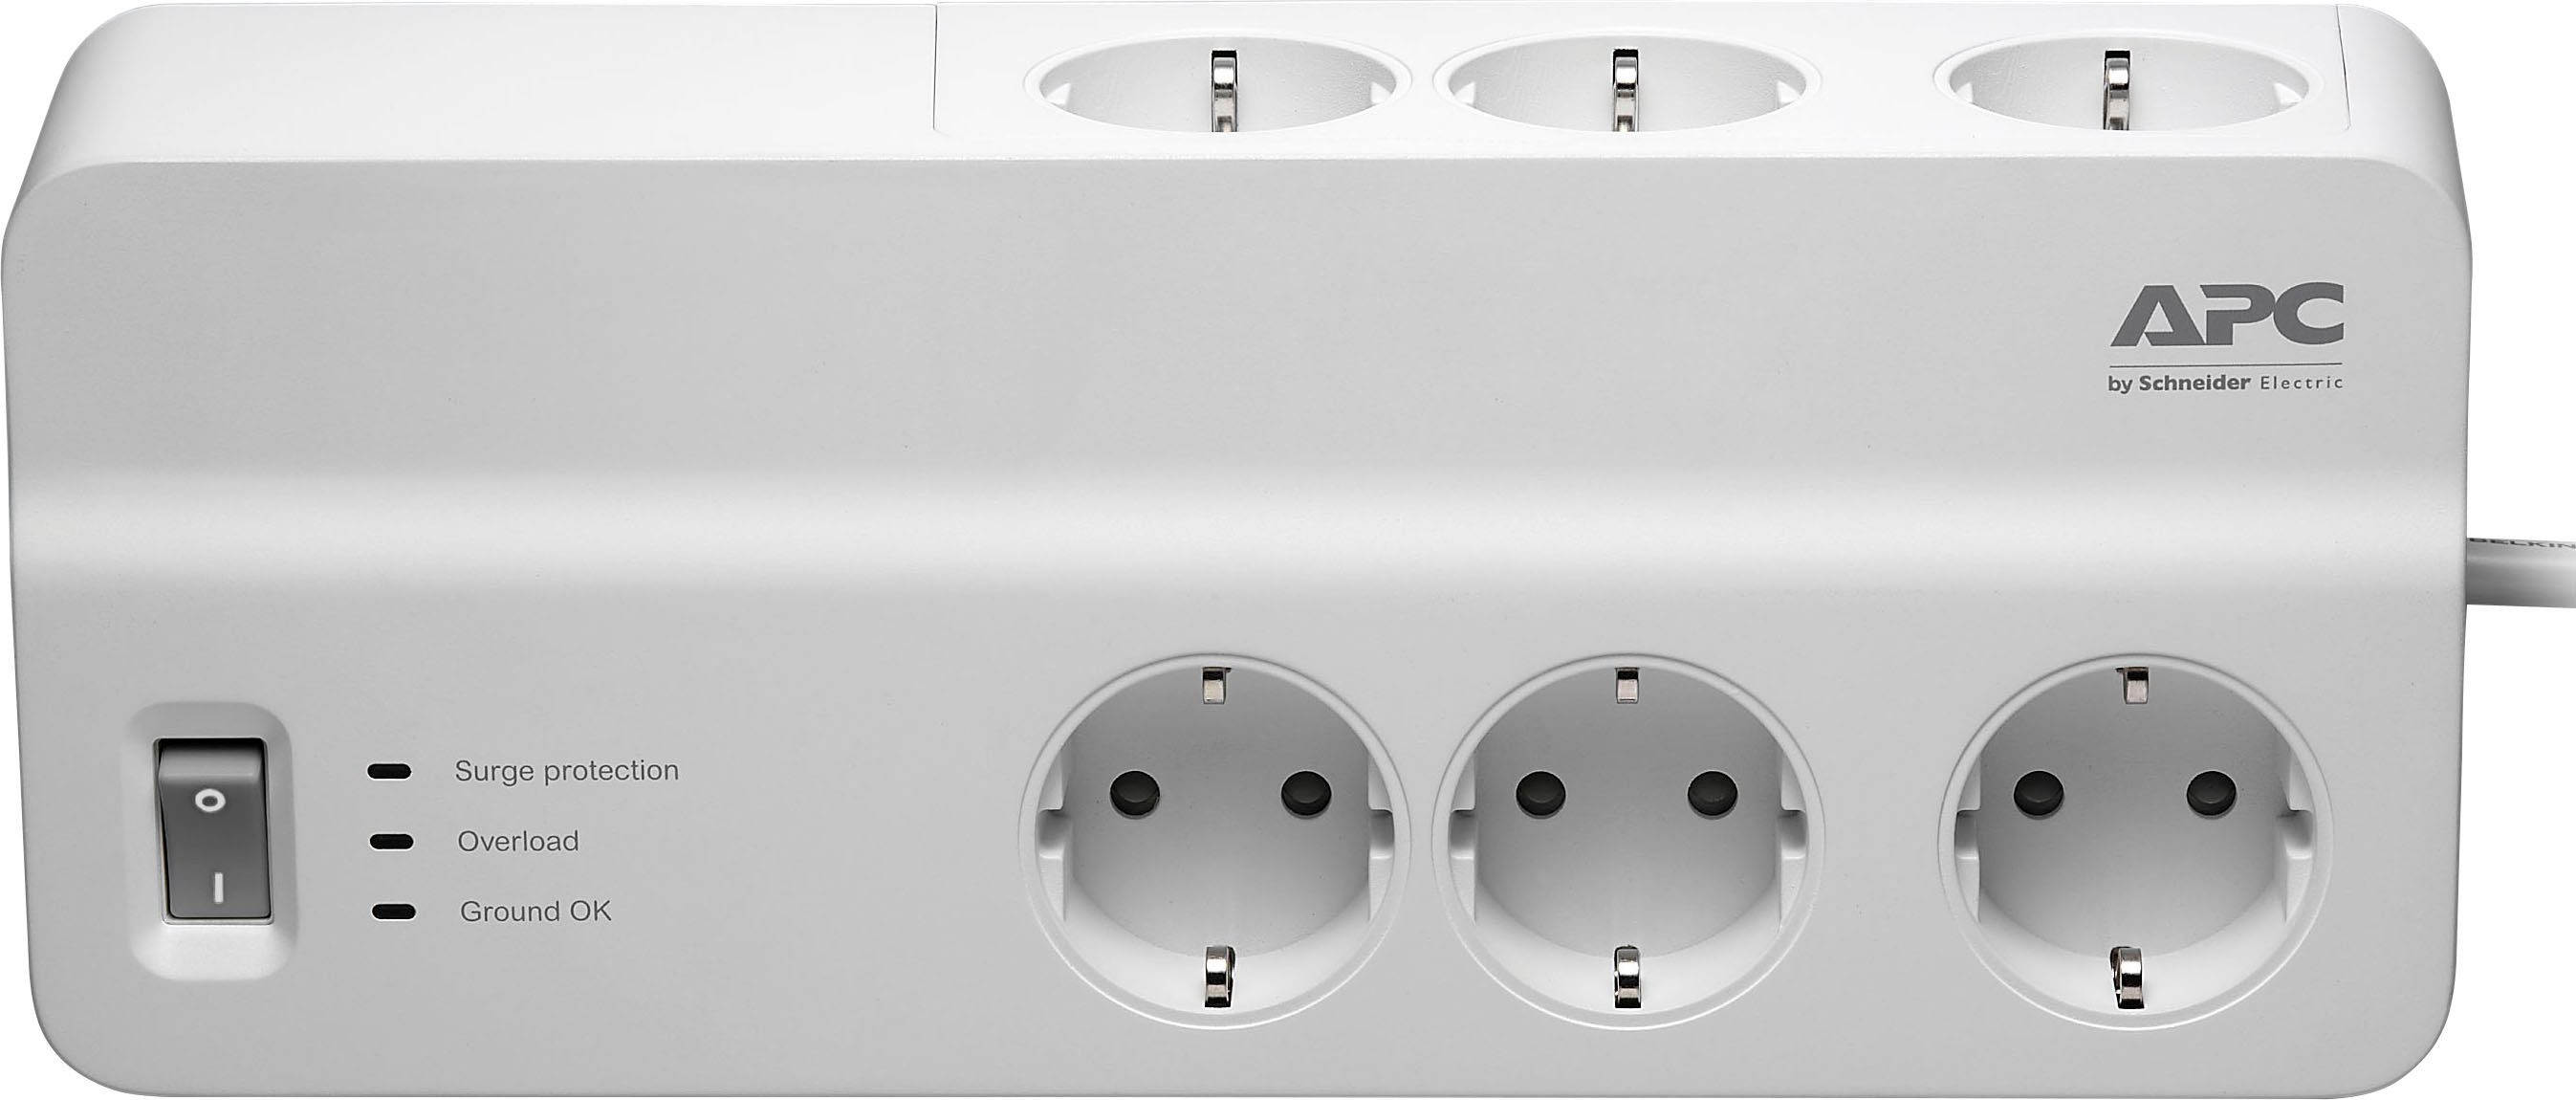 APC PM6-GR Steckdosenleiste 6-fach (Ein- / Ausschalter, LED-Statusanzeige, USB-Anschlüsse, Überspannungsschutz, Kabellänge 2 m)